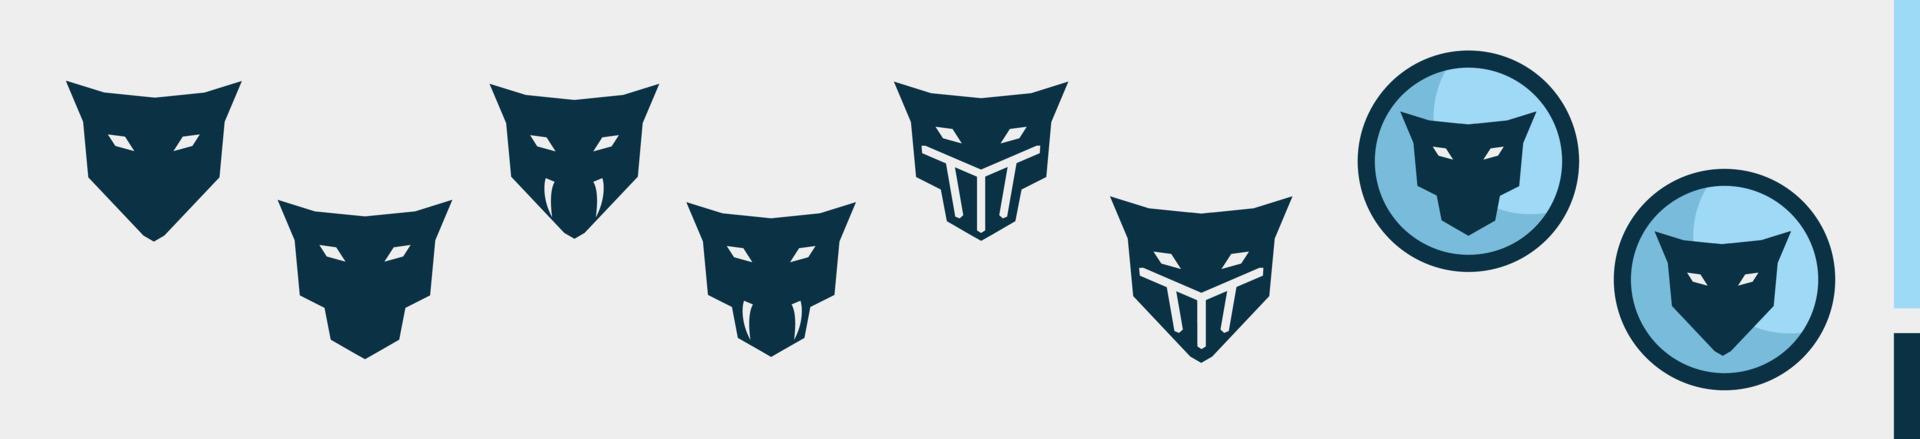 conjunto de iconos de cabeza de gato azul - conjunto de iconos de logotipo de cabeza de jaguar azul aislado sobre fondo blanco vector